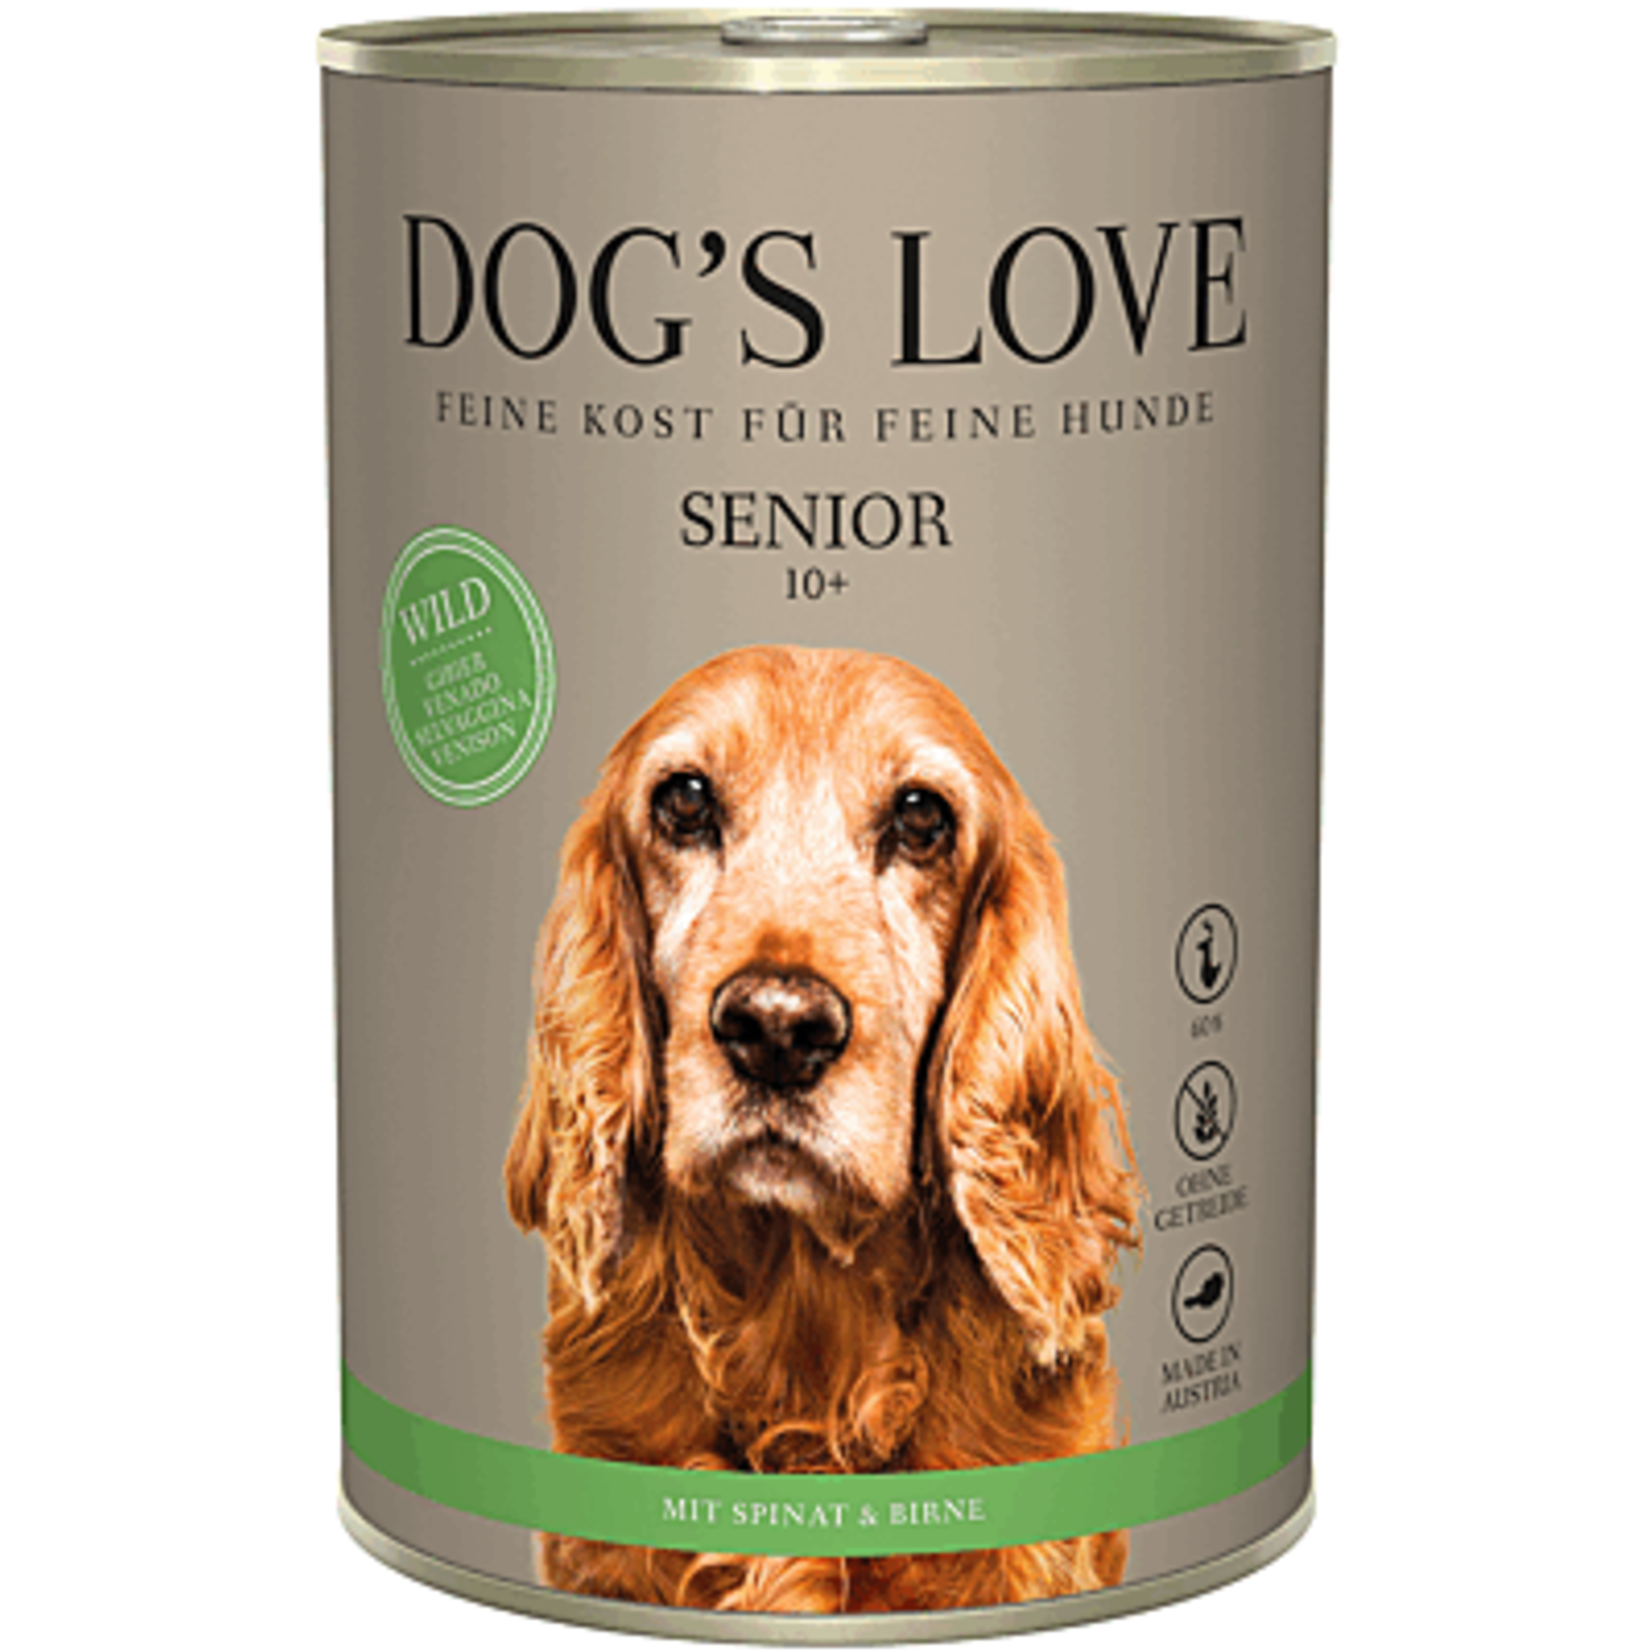 Dog's Love Dog's Love sénior 10+ 400g